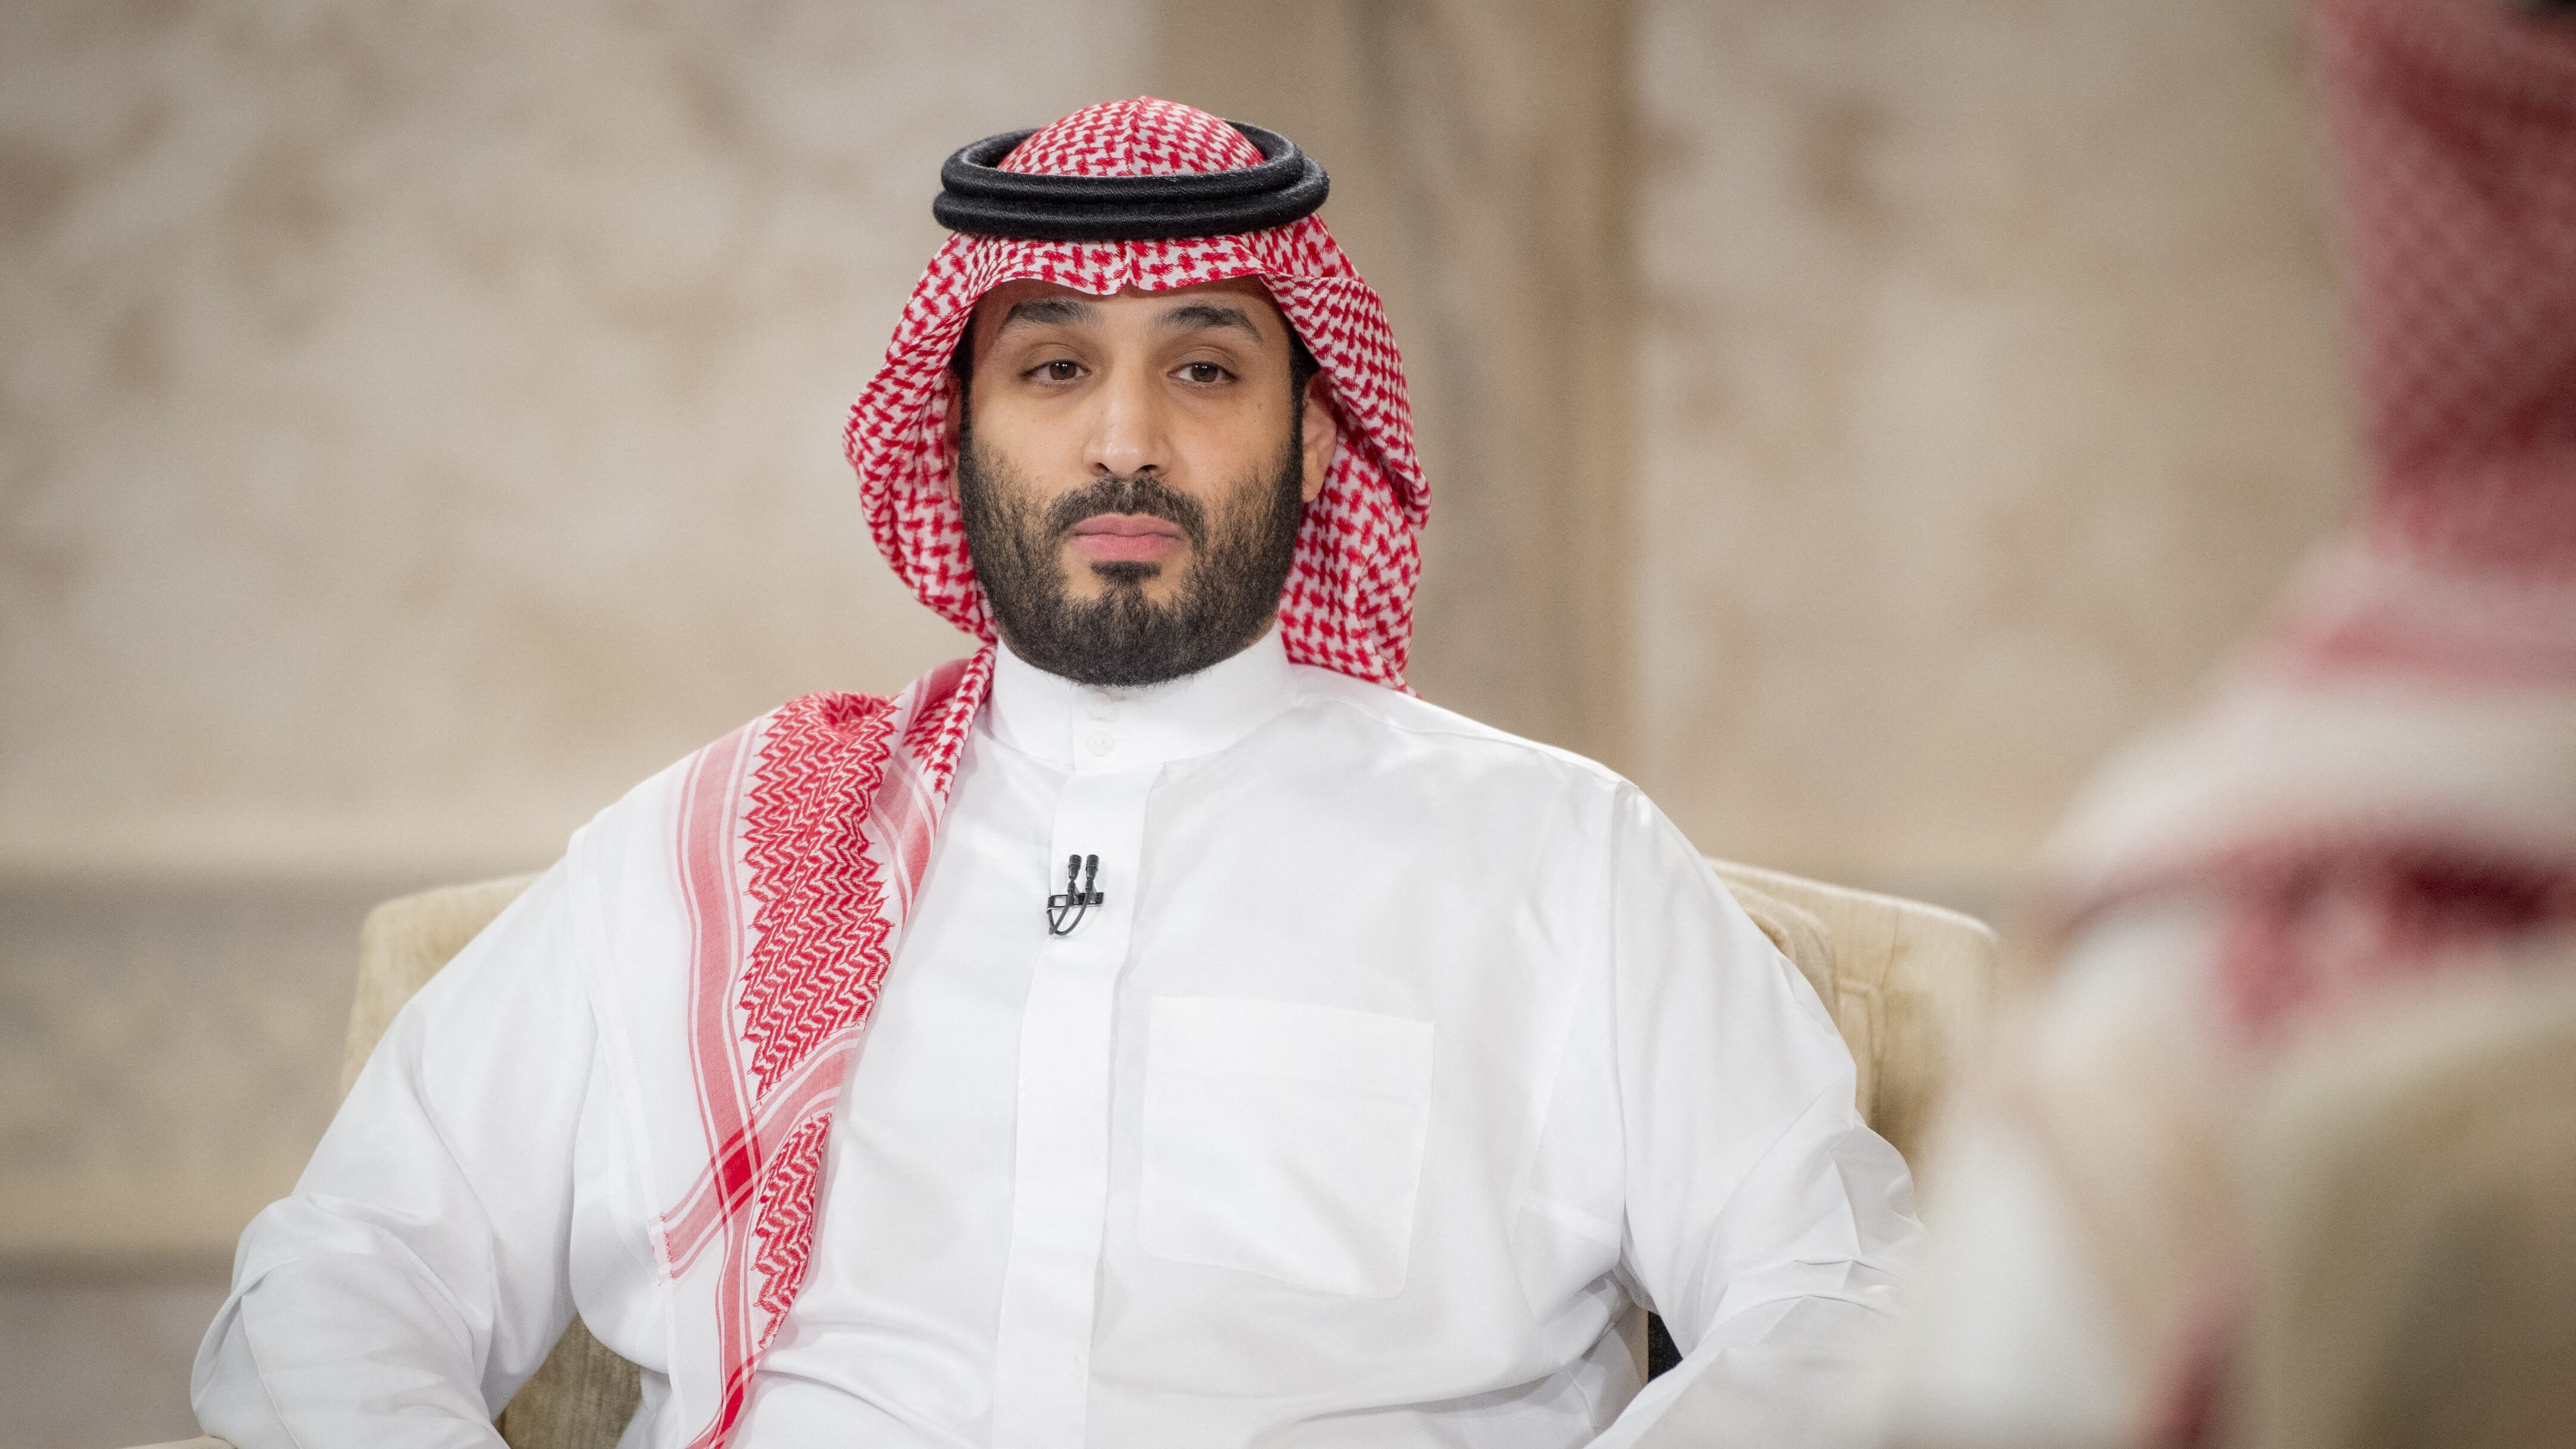 Több mint kétszáz embert vetetett őrizetbe korrupció miatt a Szaúdi koronaherceg